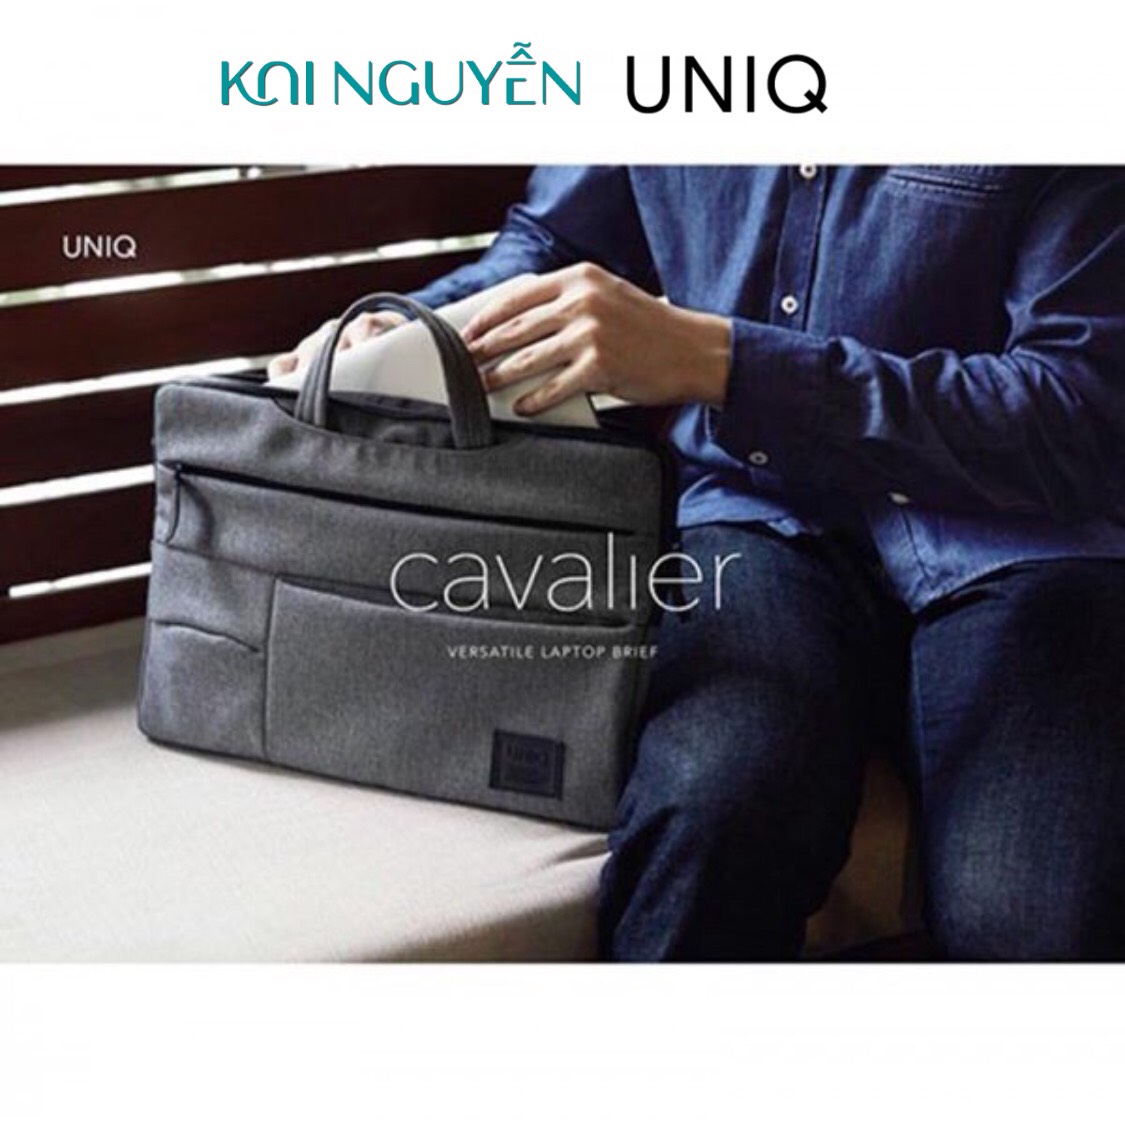 Túi vải dành cho Macbook, Laptop UNIQ CAVALIER 2-IN-1 dành cho Macbook, Laptop - Hàng chính hãng